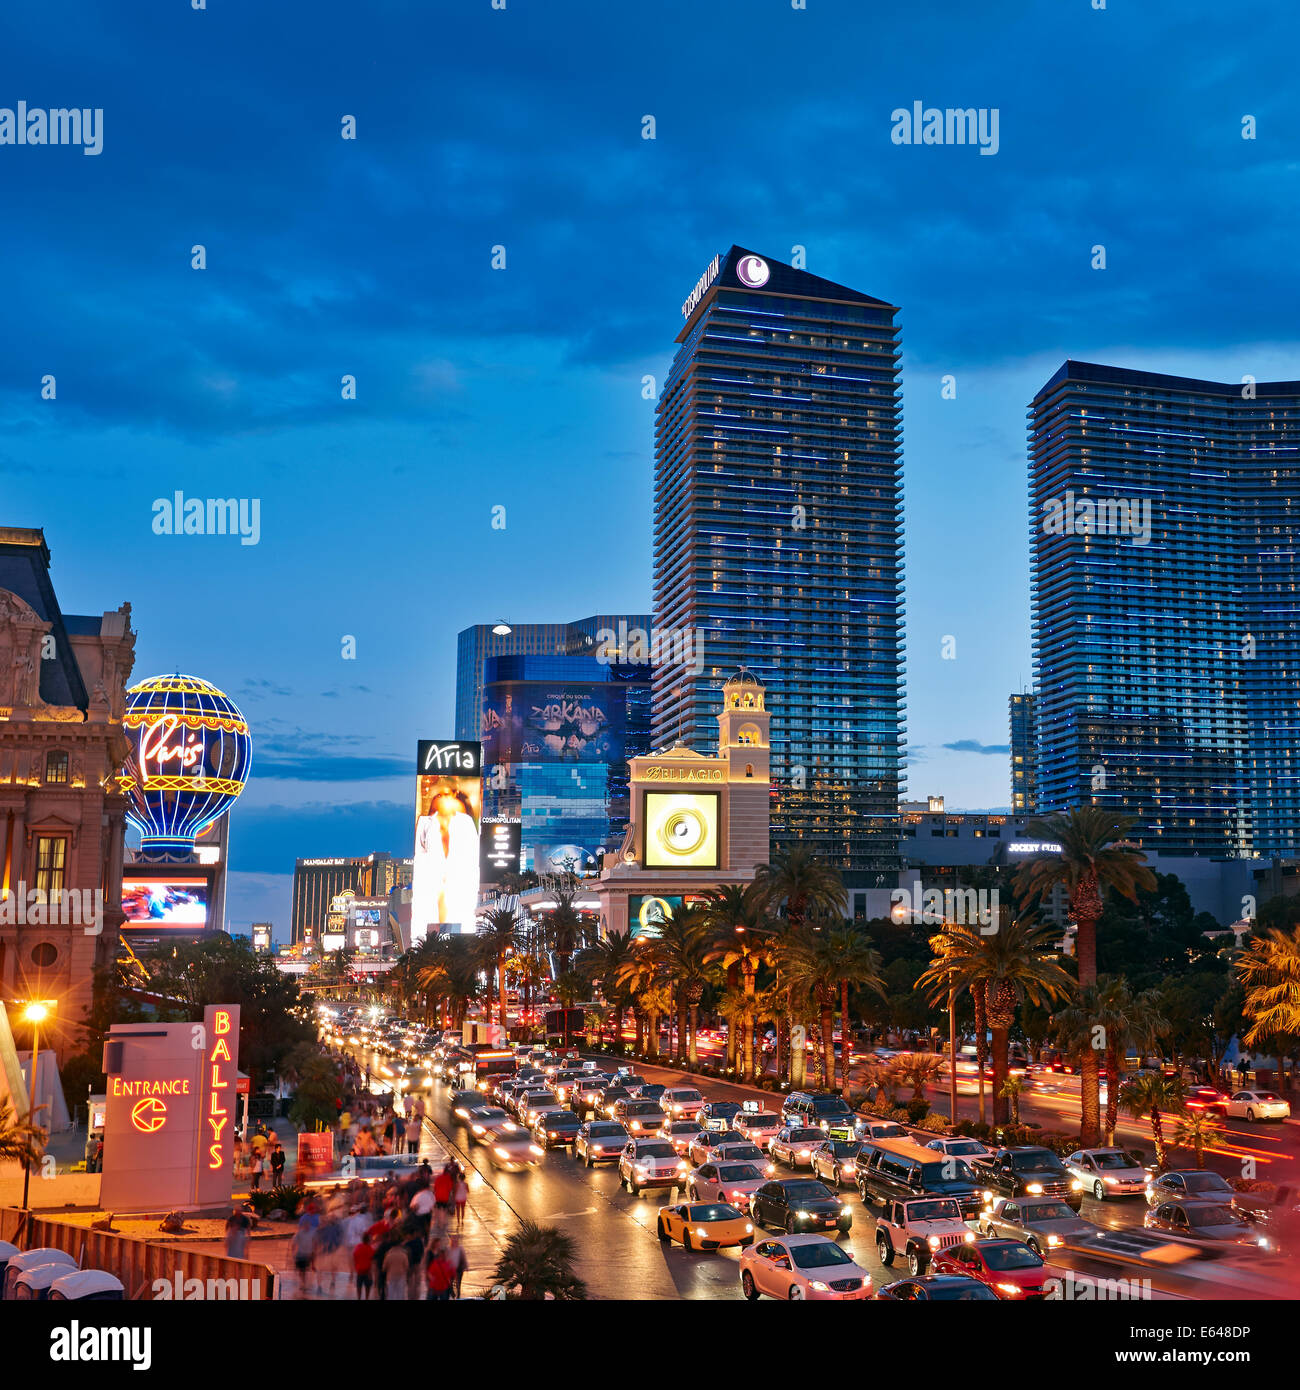 Las Vegas Boulevard. Las Vegas, Nevada, USA. Stock Photo